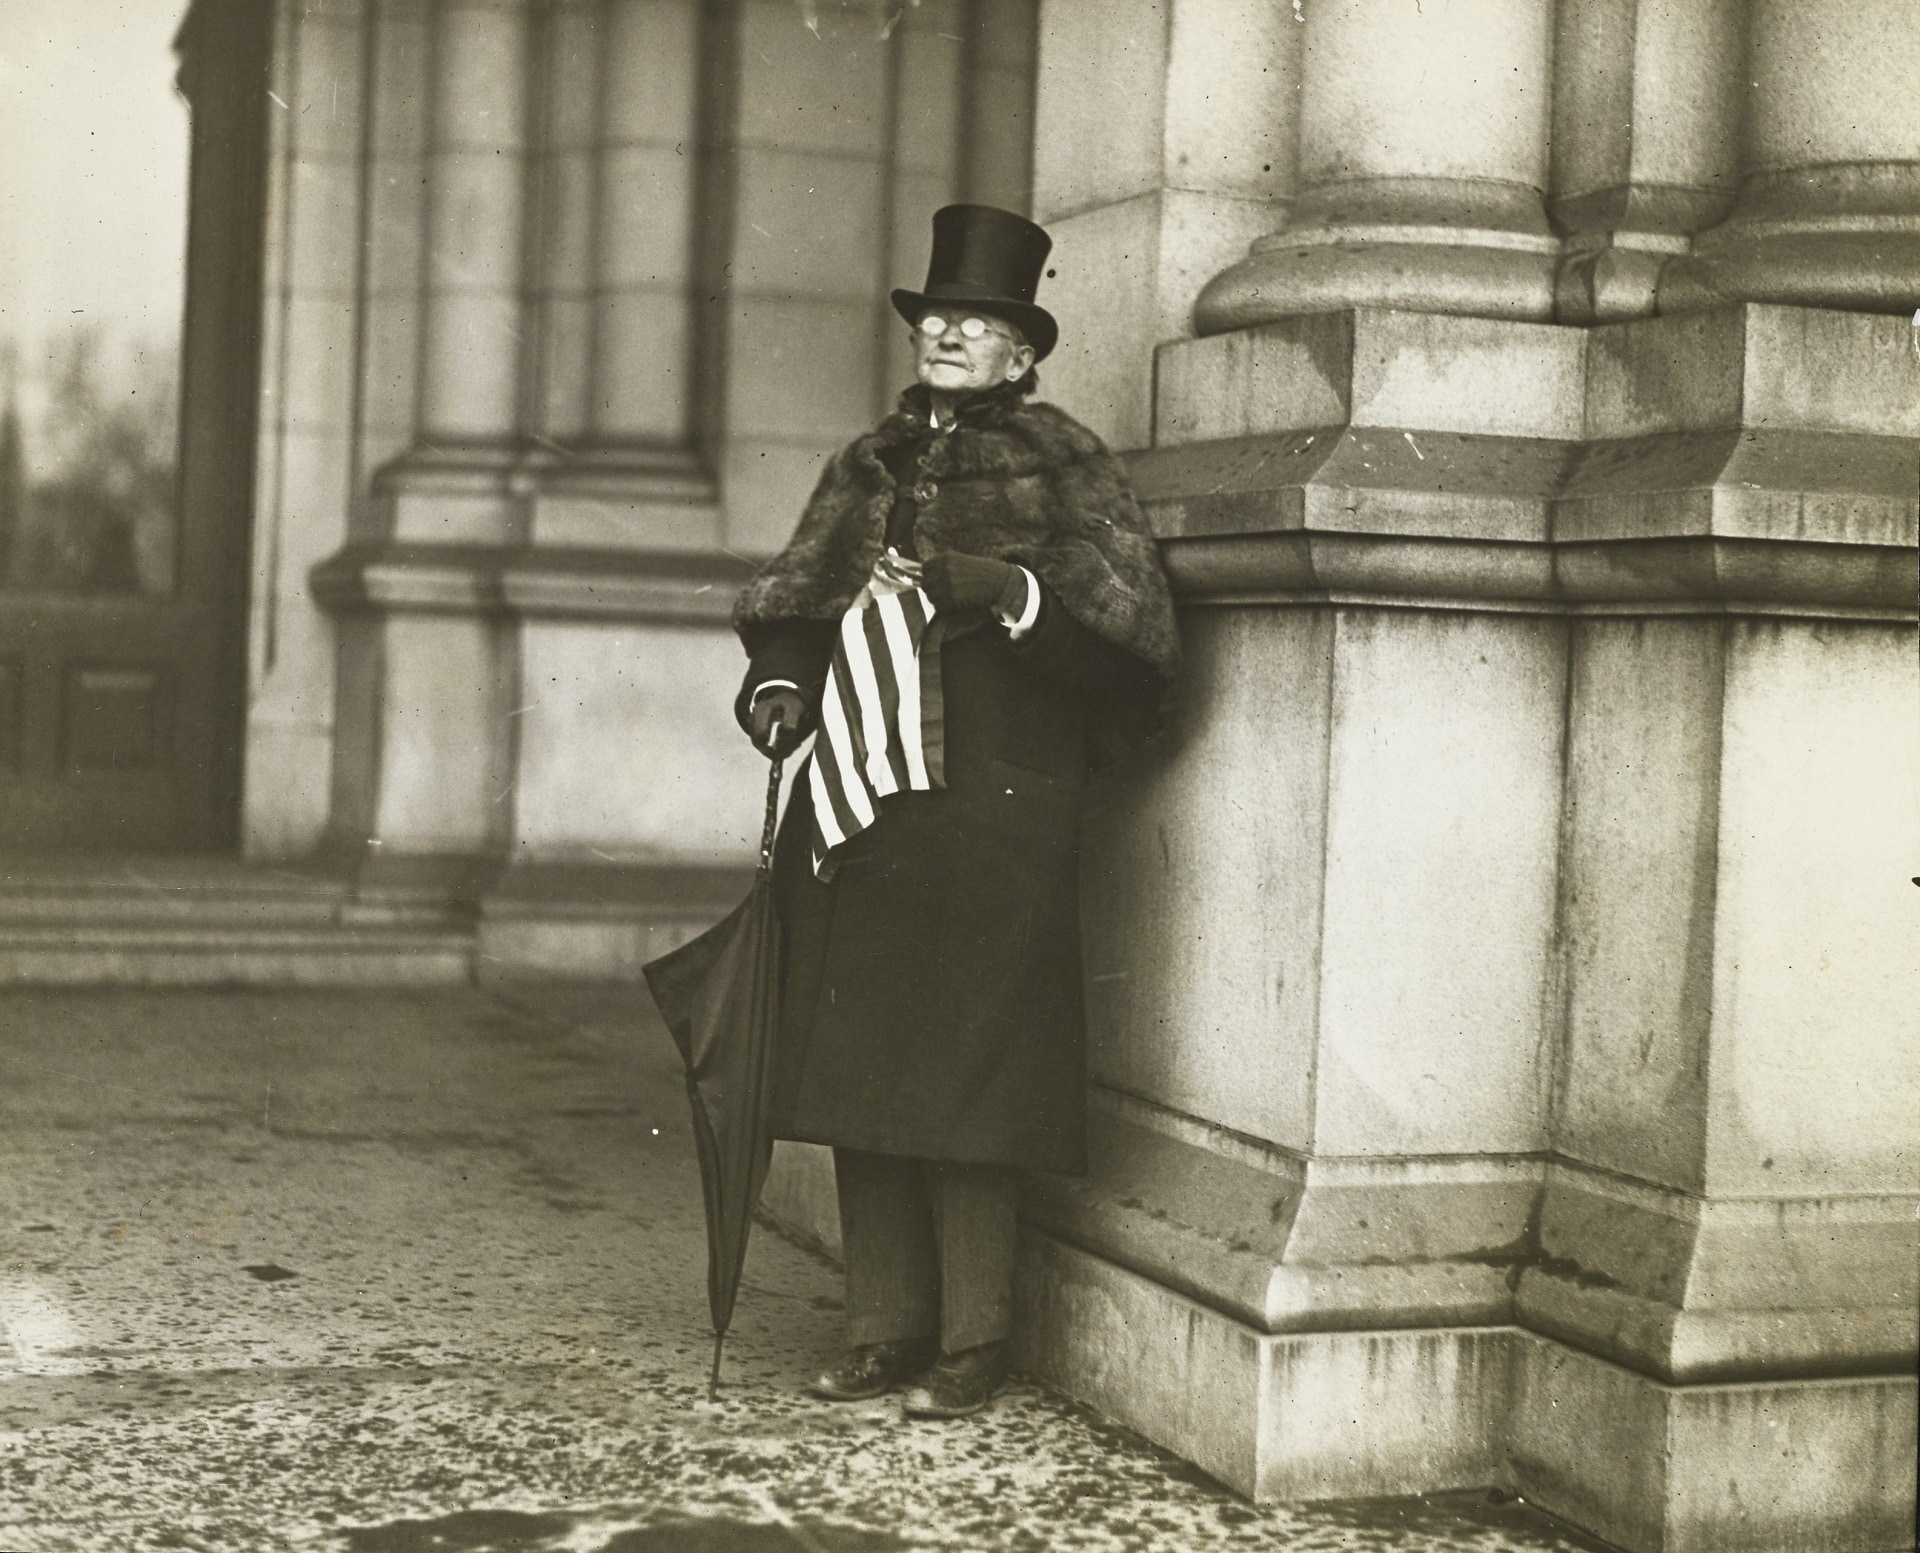 Paul Thompson, Dottoressa Mary Walker, la prima donna che ha indossato i pantaloni in pubblico, c.1911, Vanity Fair © Condé Nast